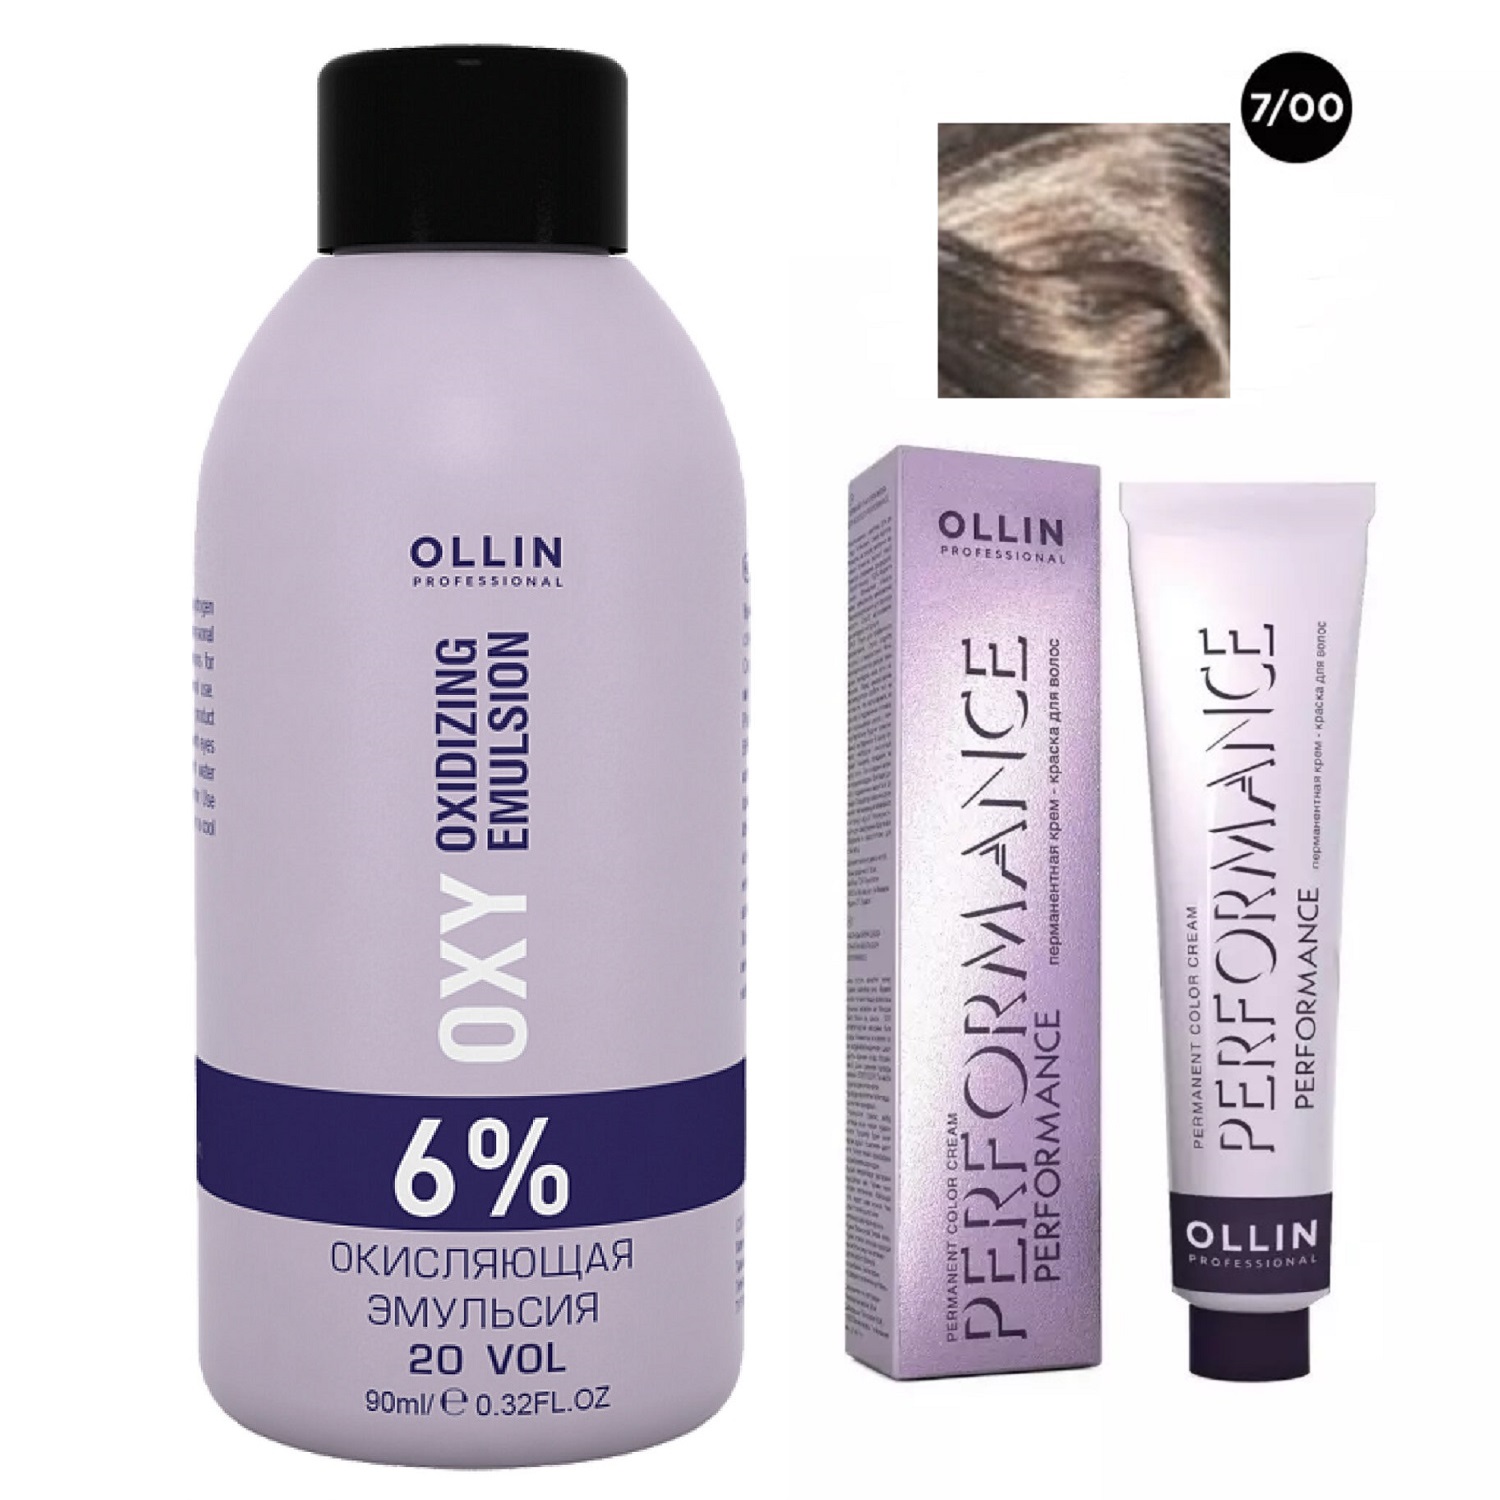 Ollin Professional Набор Перманентная крем-краска для волос Ollin Performance оттенок 7/00 русый глубокий 60 мл + Окисляющая эмульсия Oxy 6% 90 мл (Ollin Professional, Performance)